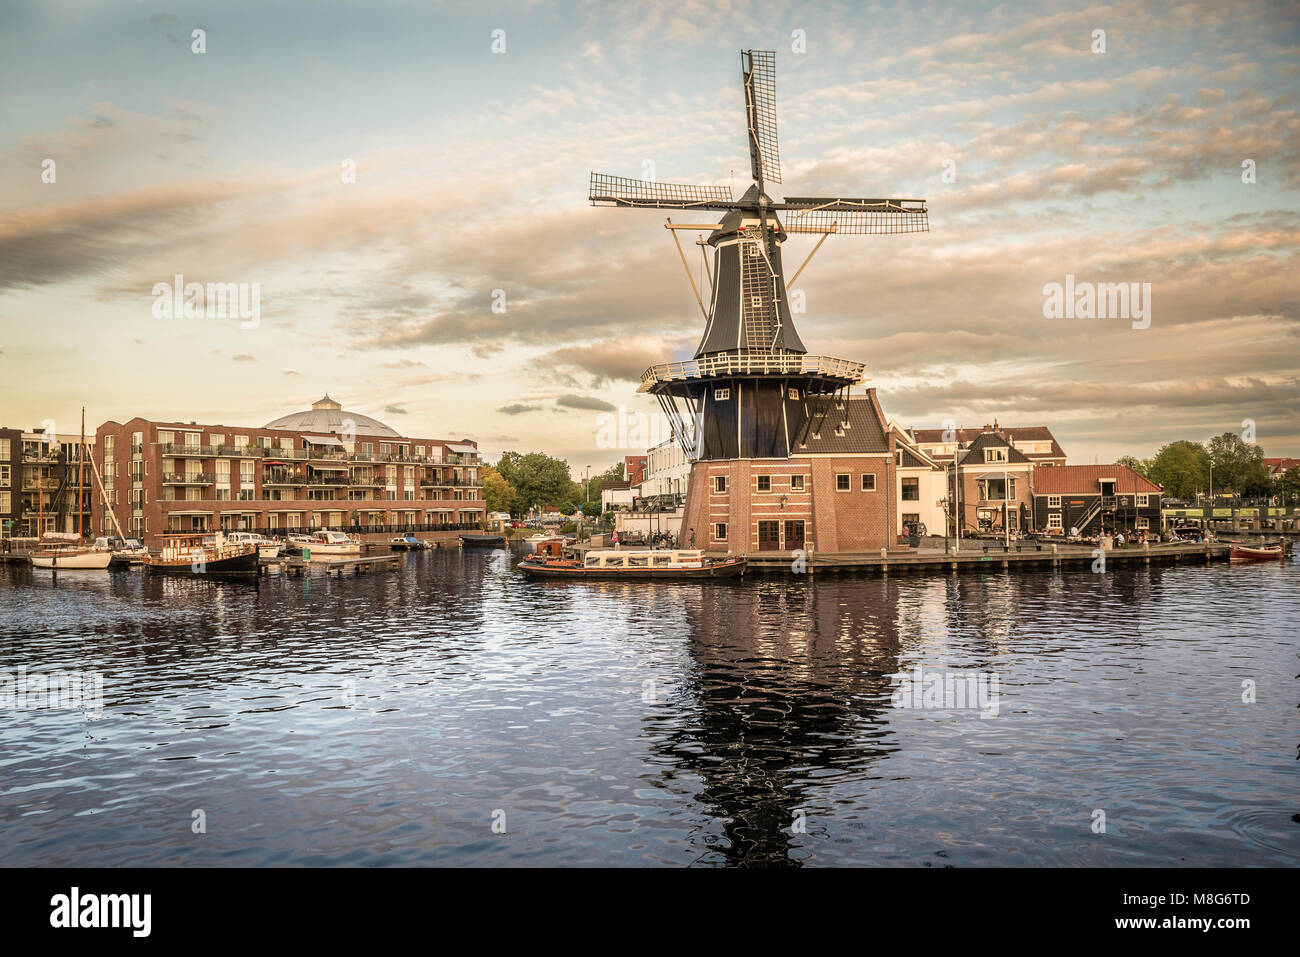 Molen De Adriaan Windmühle in Harlem, Niederlande im Spätsommer am Nachmittag Stockfoto